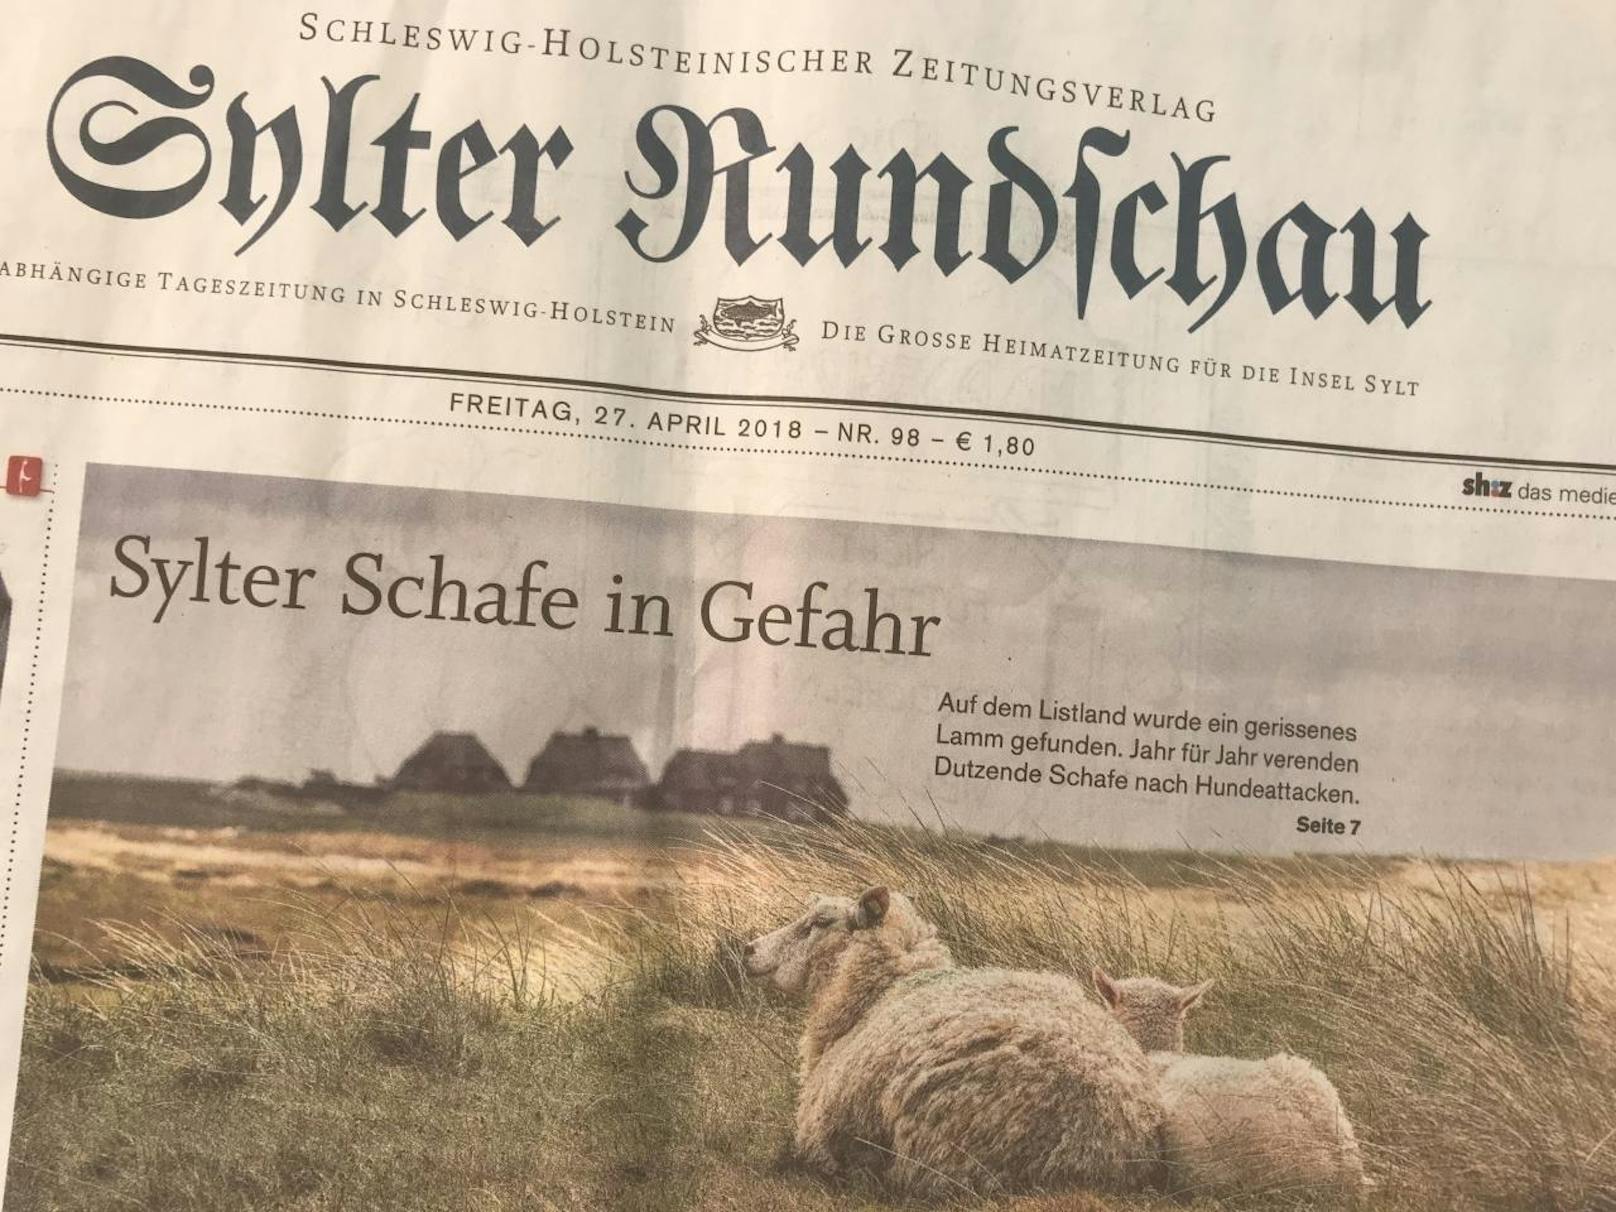 In diesem Jahr hat es Jürgen Wolf-Diedrichsens Herde als erste getroffen. Der Schafzüchter vermutet einen freilaufenden Hund als Täter, wie die "Sylter Rundschau" schreibt.